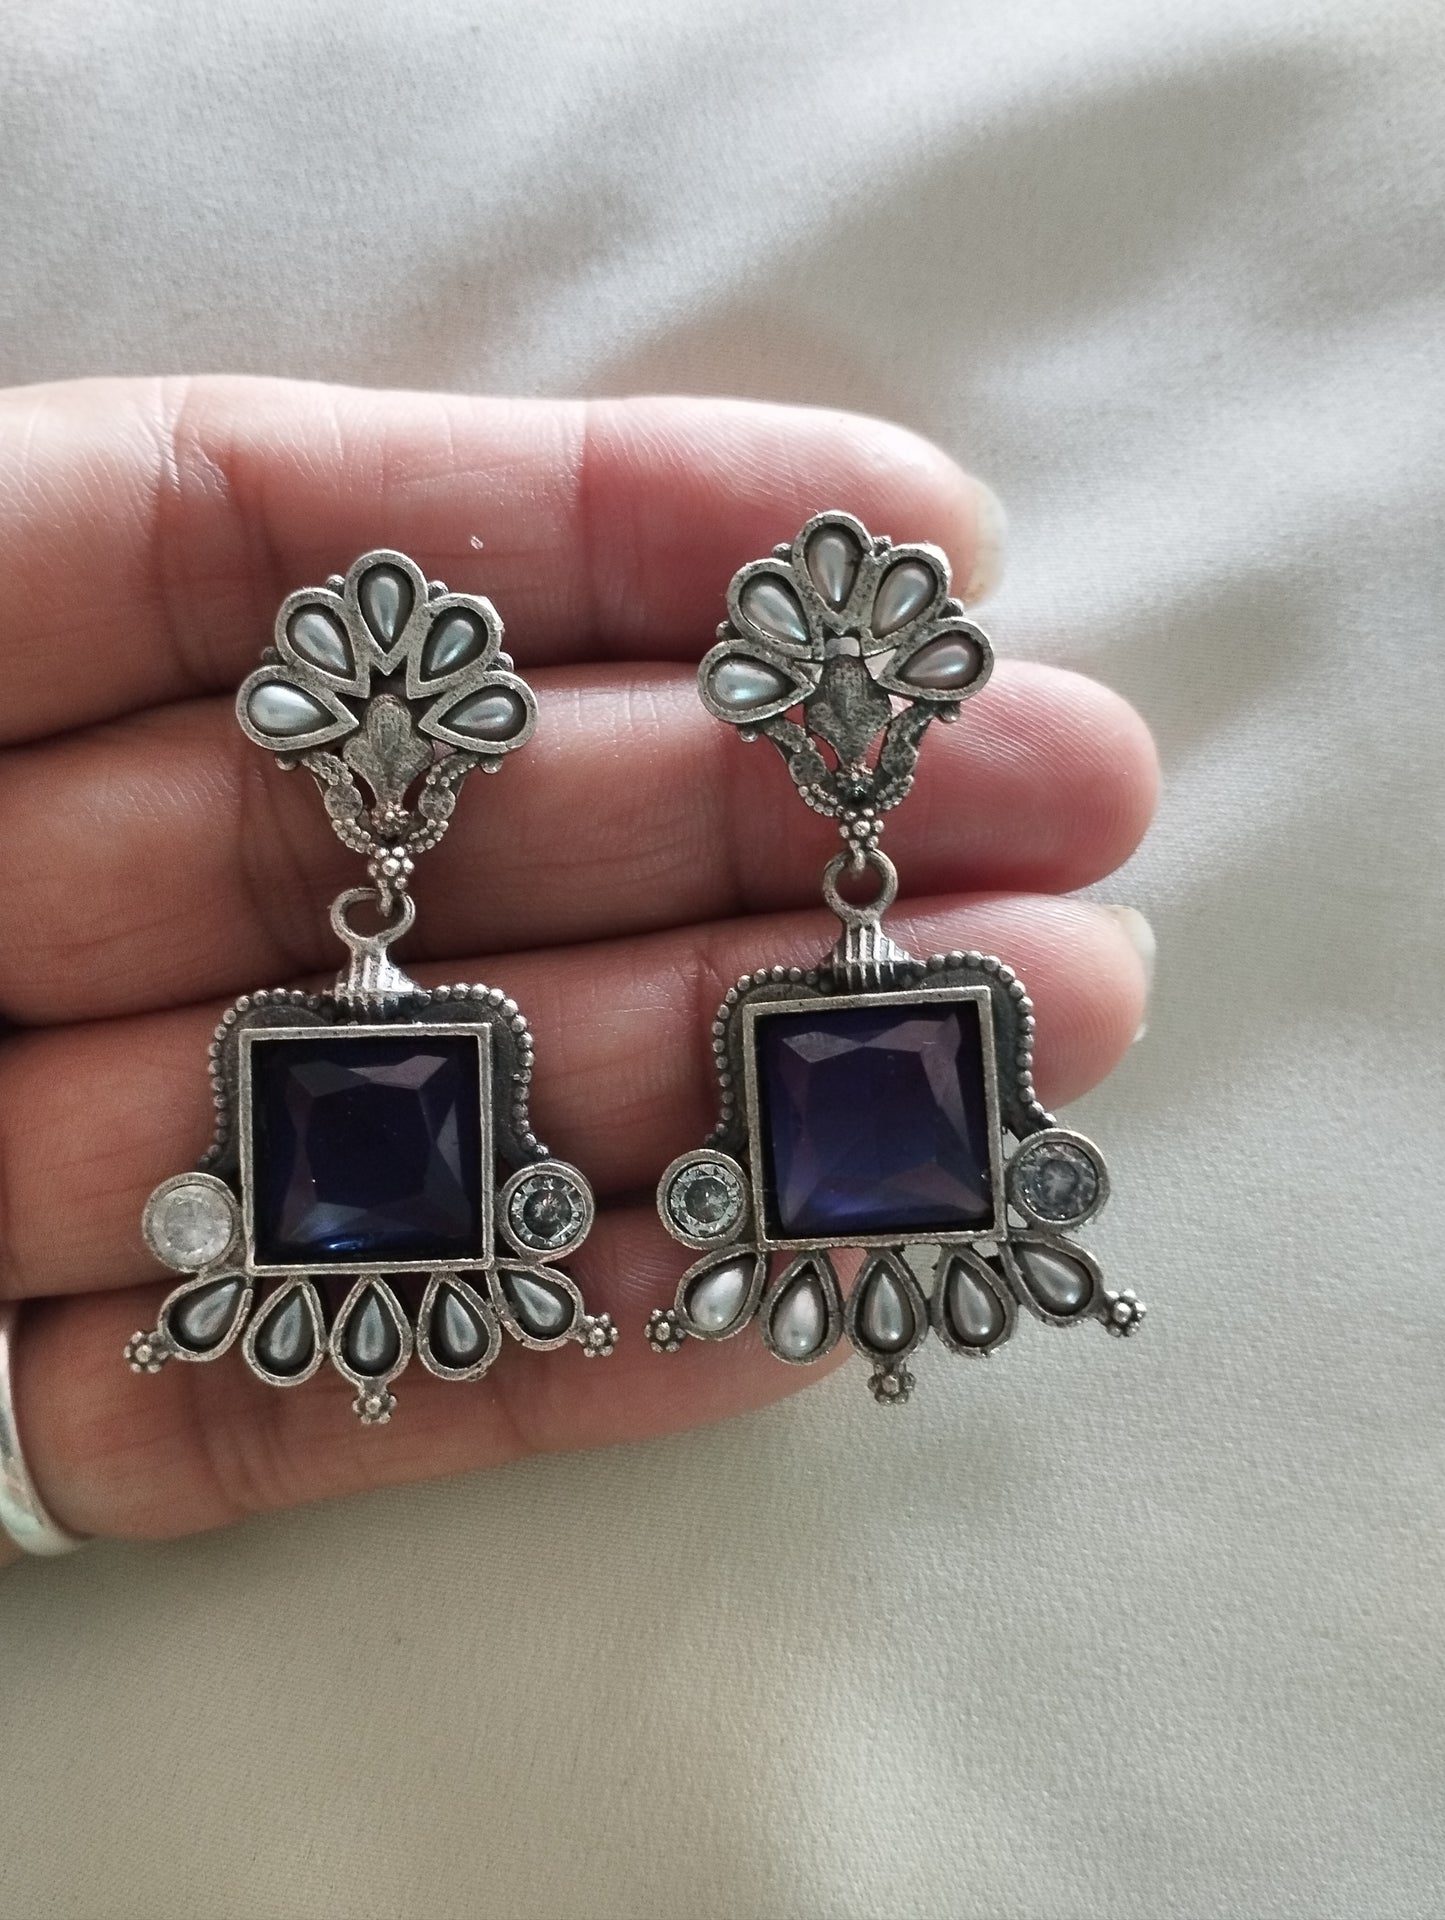 Brass casting silver look alike fine quality stone earrings